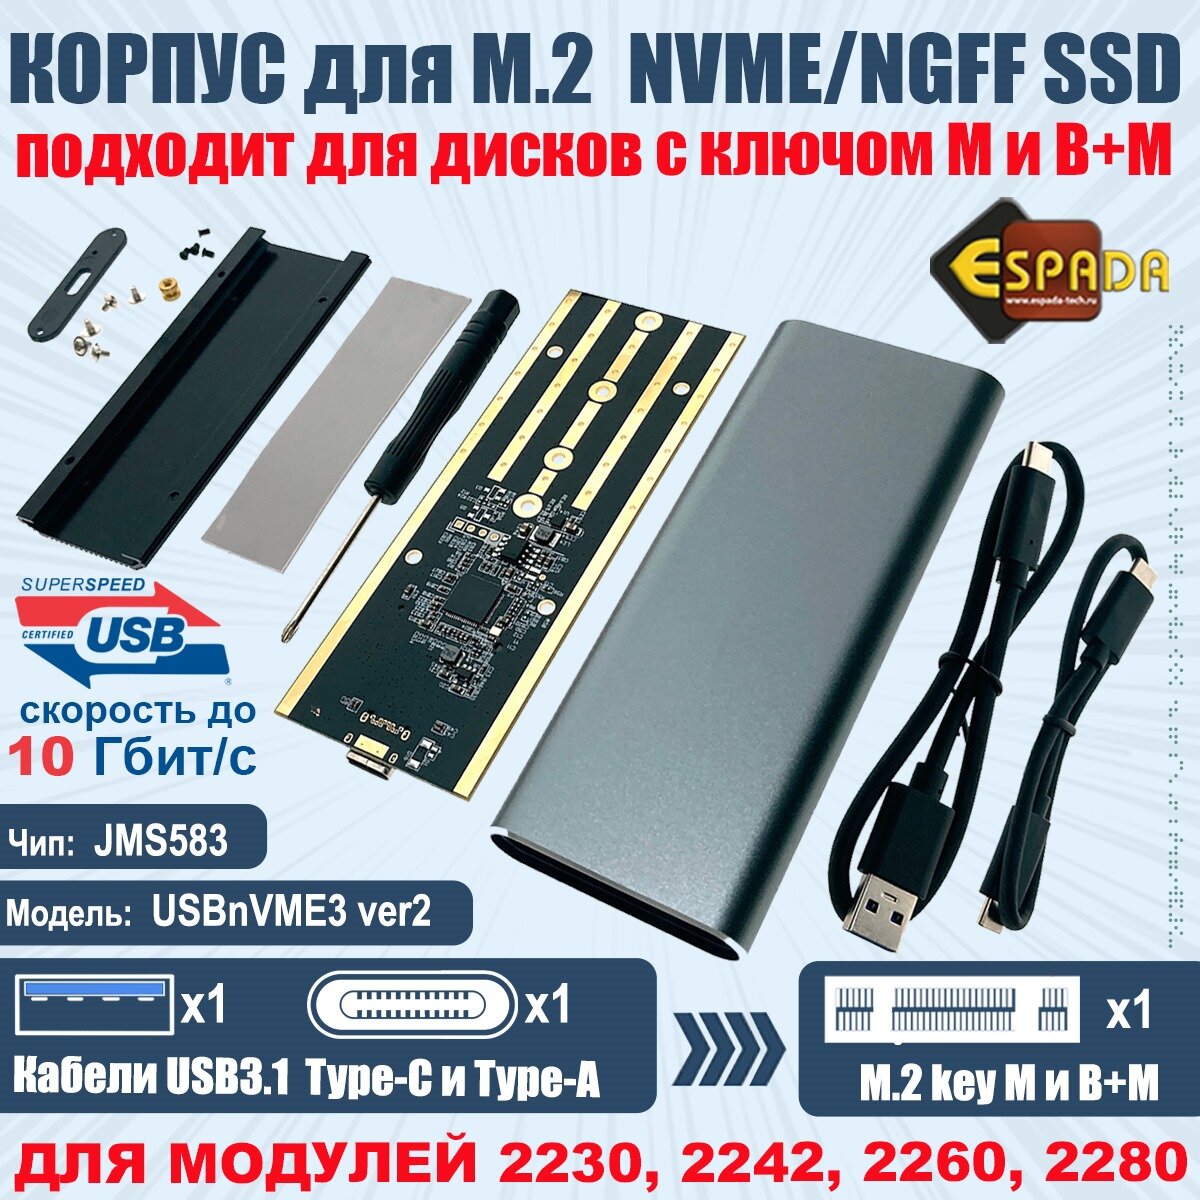 Внешний корпуc USB3.1 для M.2 nVME SSD key M модель USBnVME3 ver2 Espada